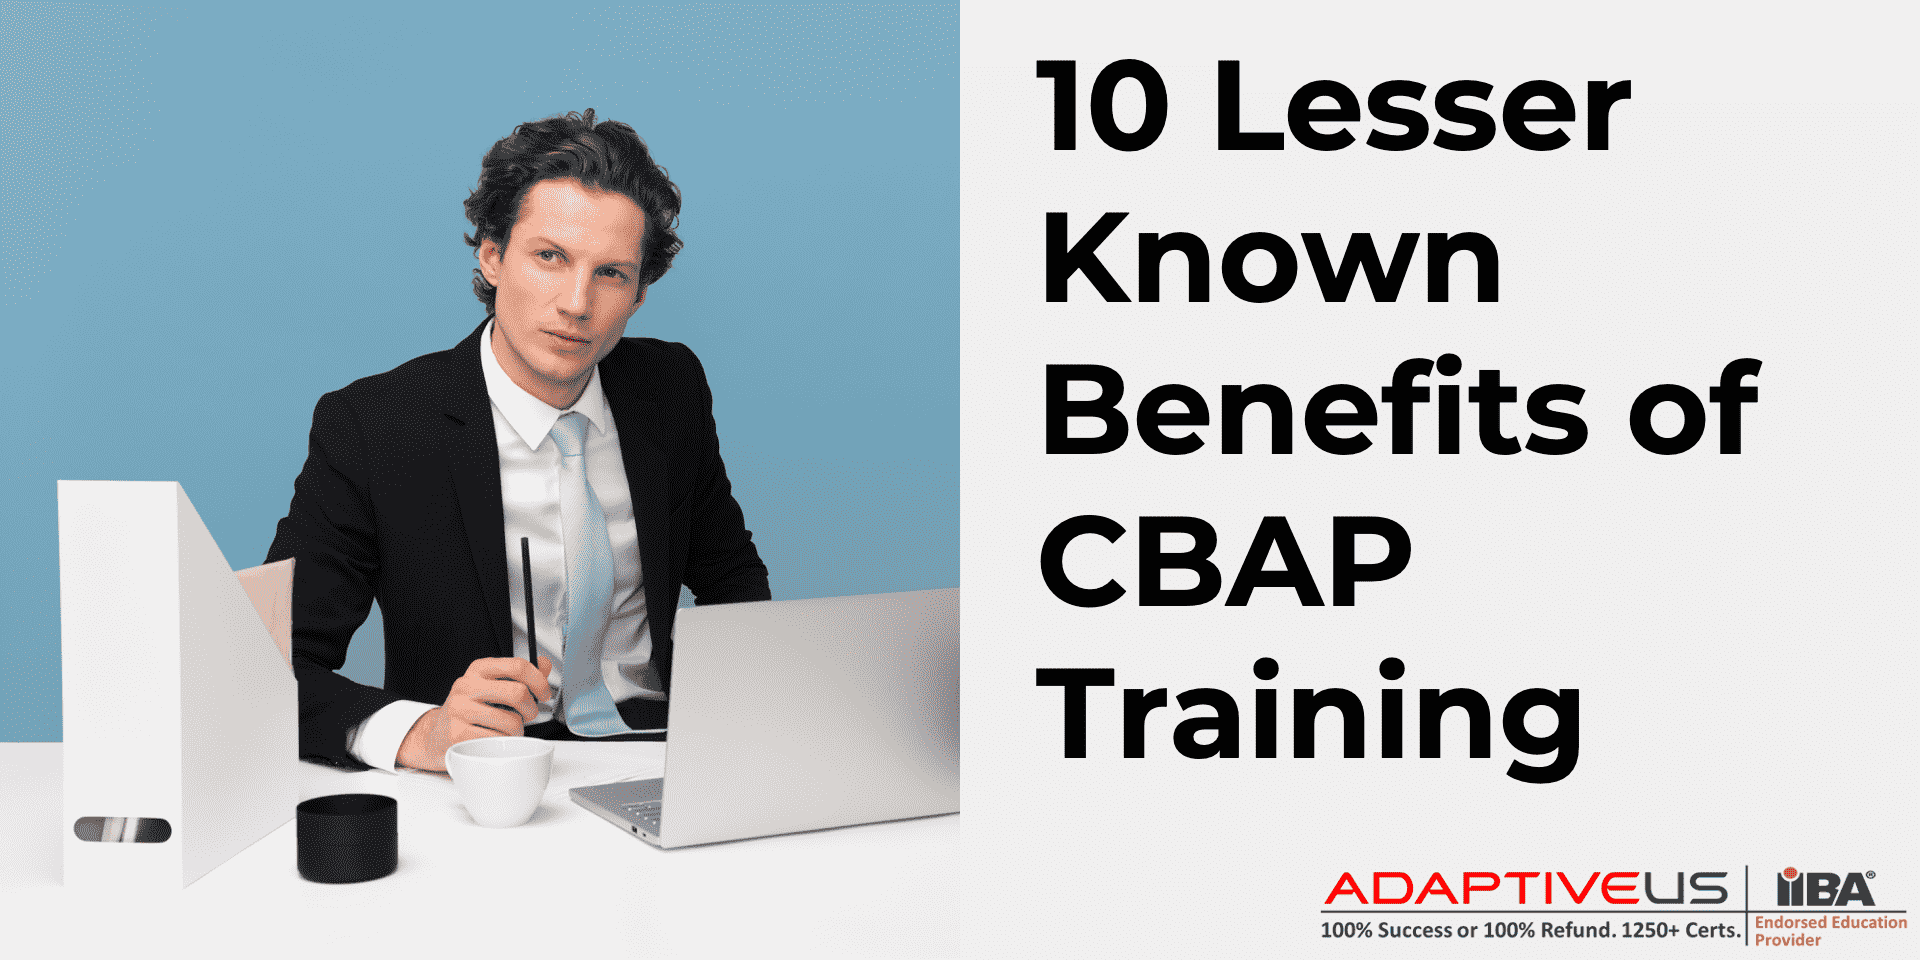 10 avantages moins connus de la formation CBAP